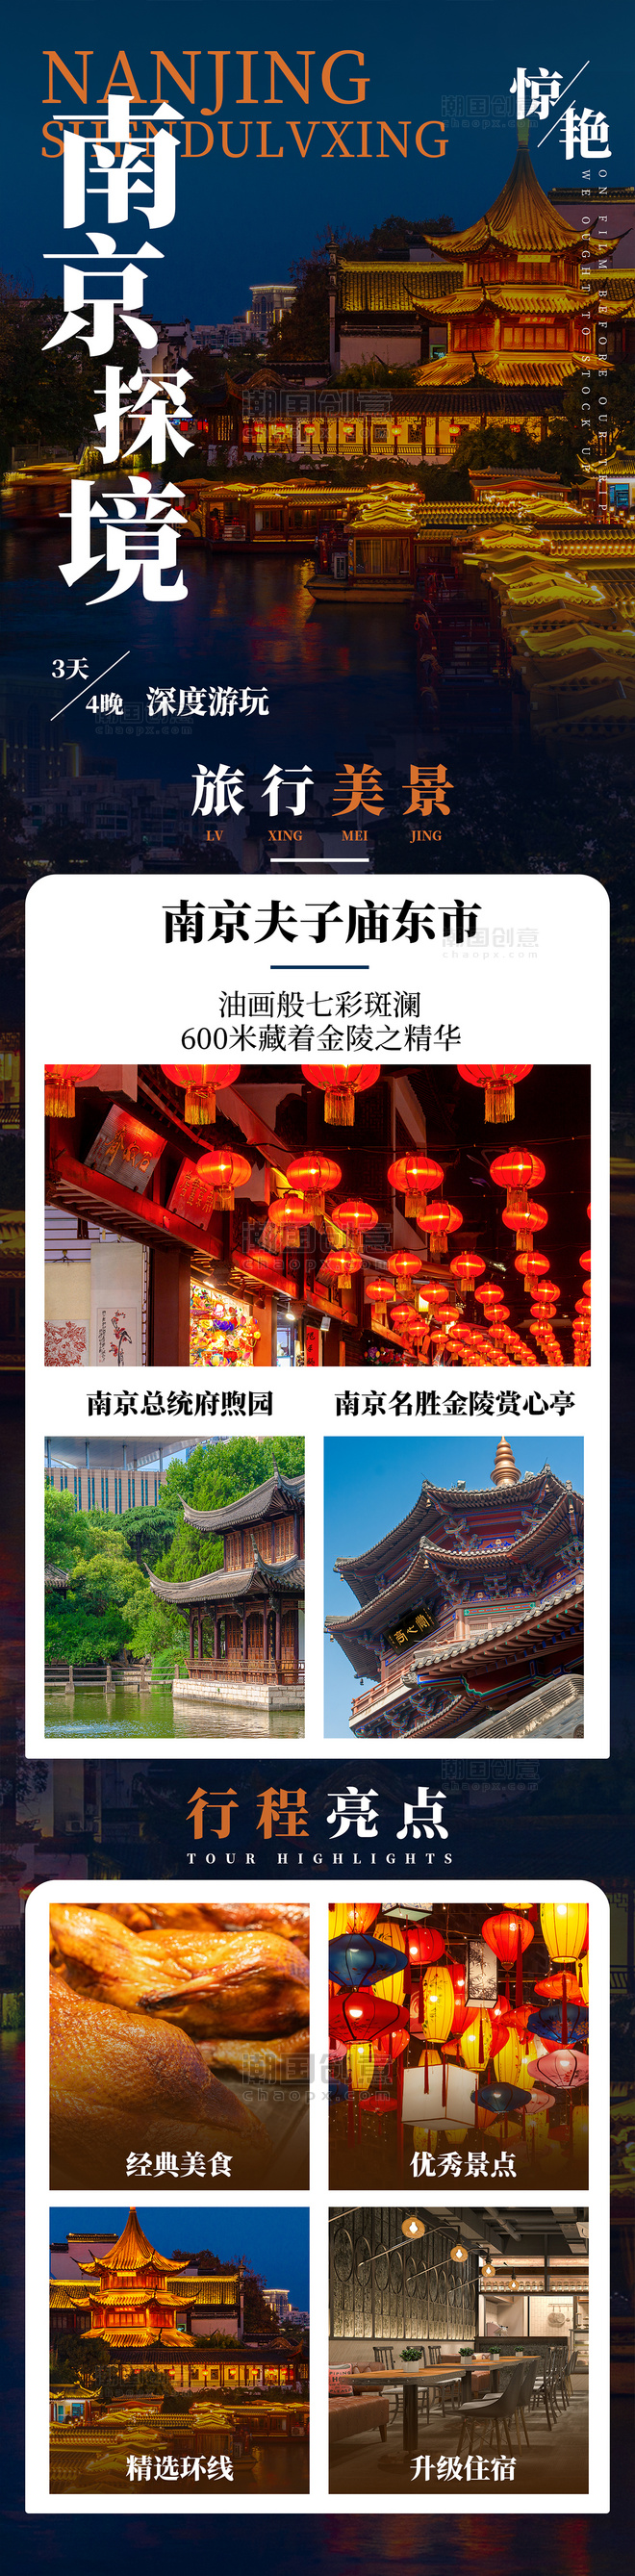 南京夫子庙旅游旅行景点介绍详情页长图